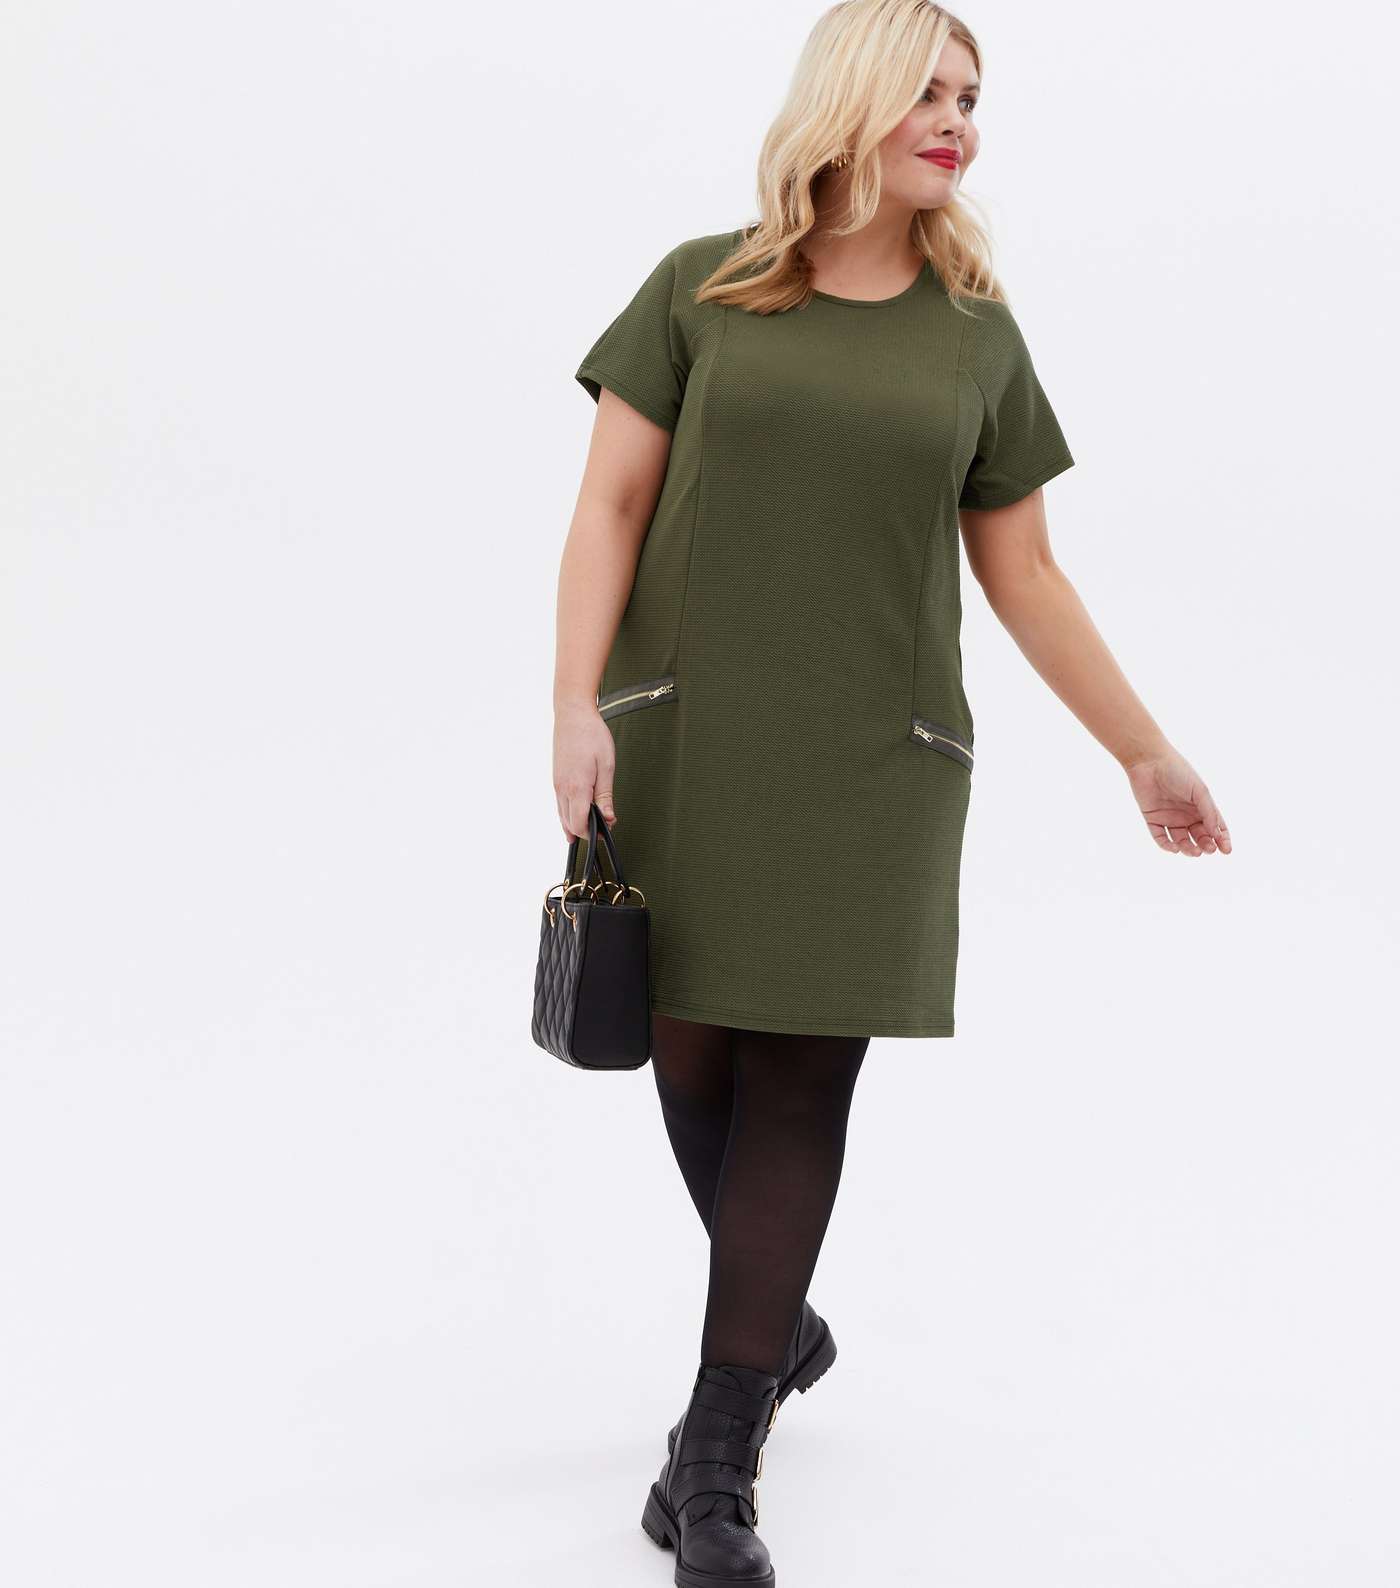 Mela Curves Olive Textured Zip Shift Dress